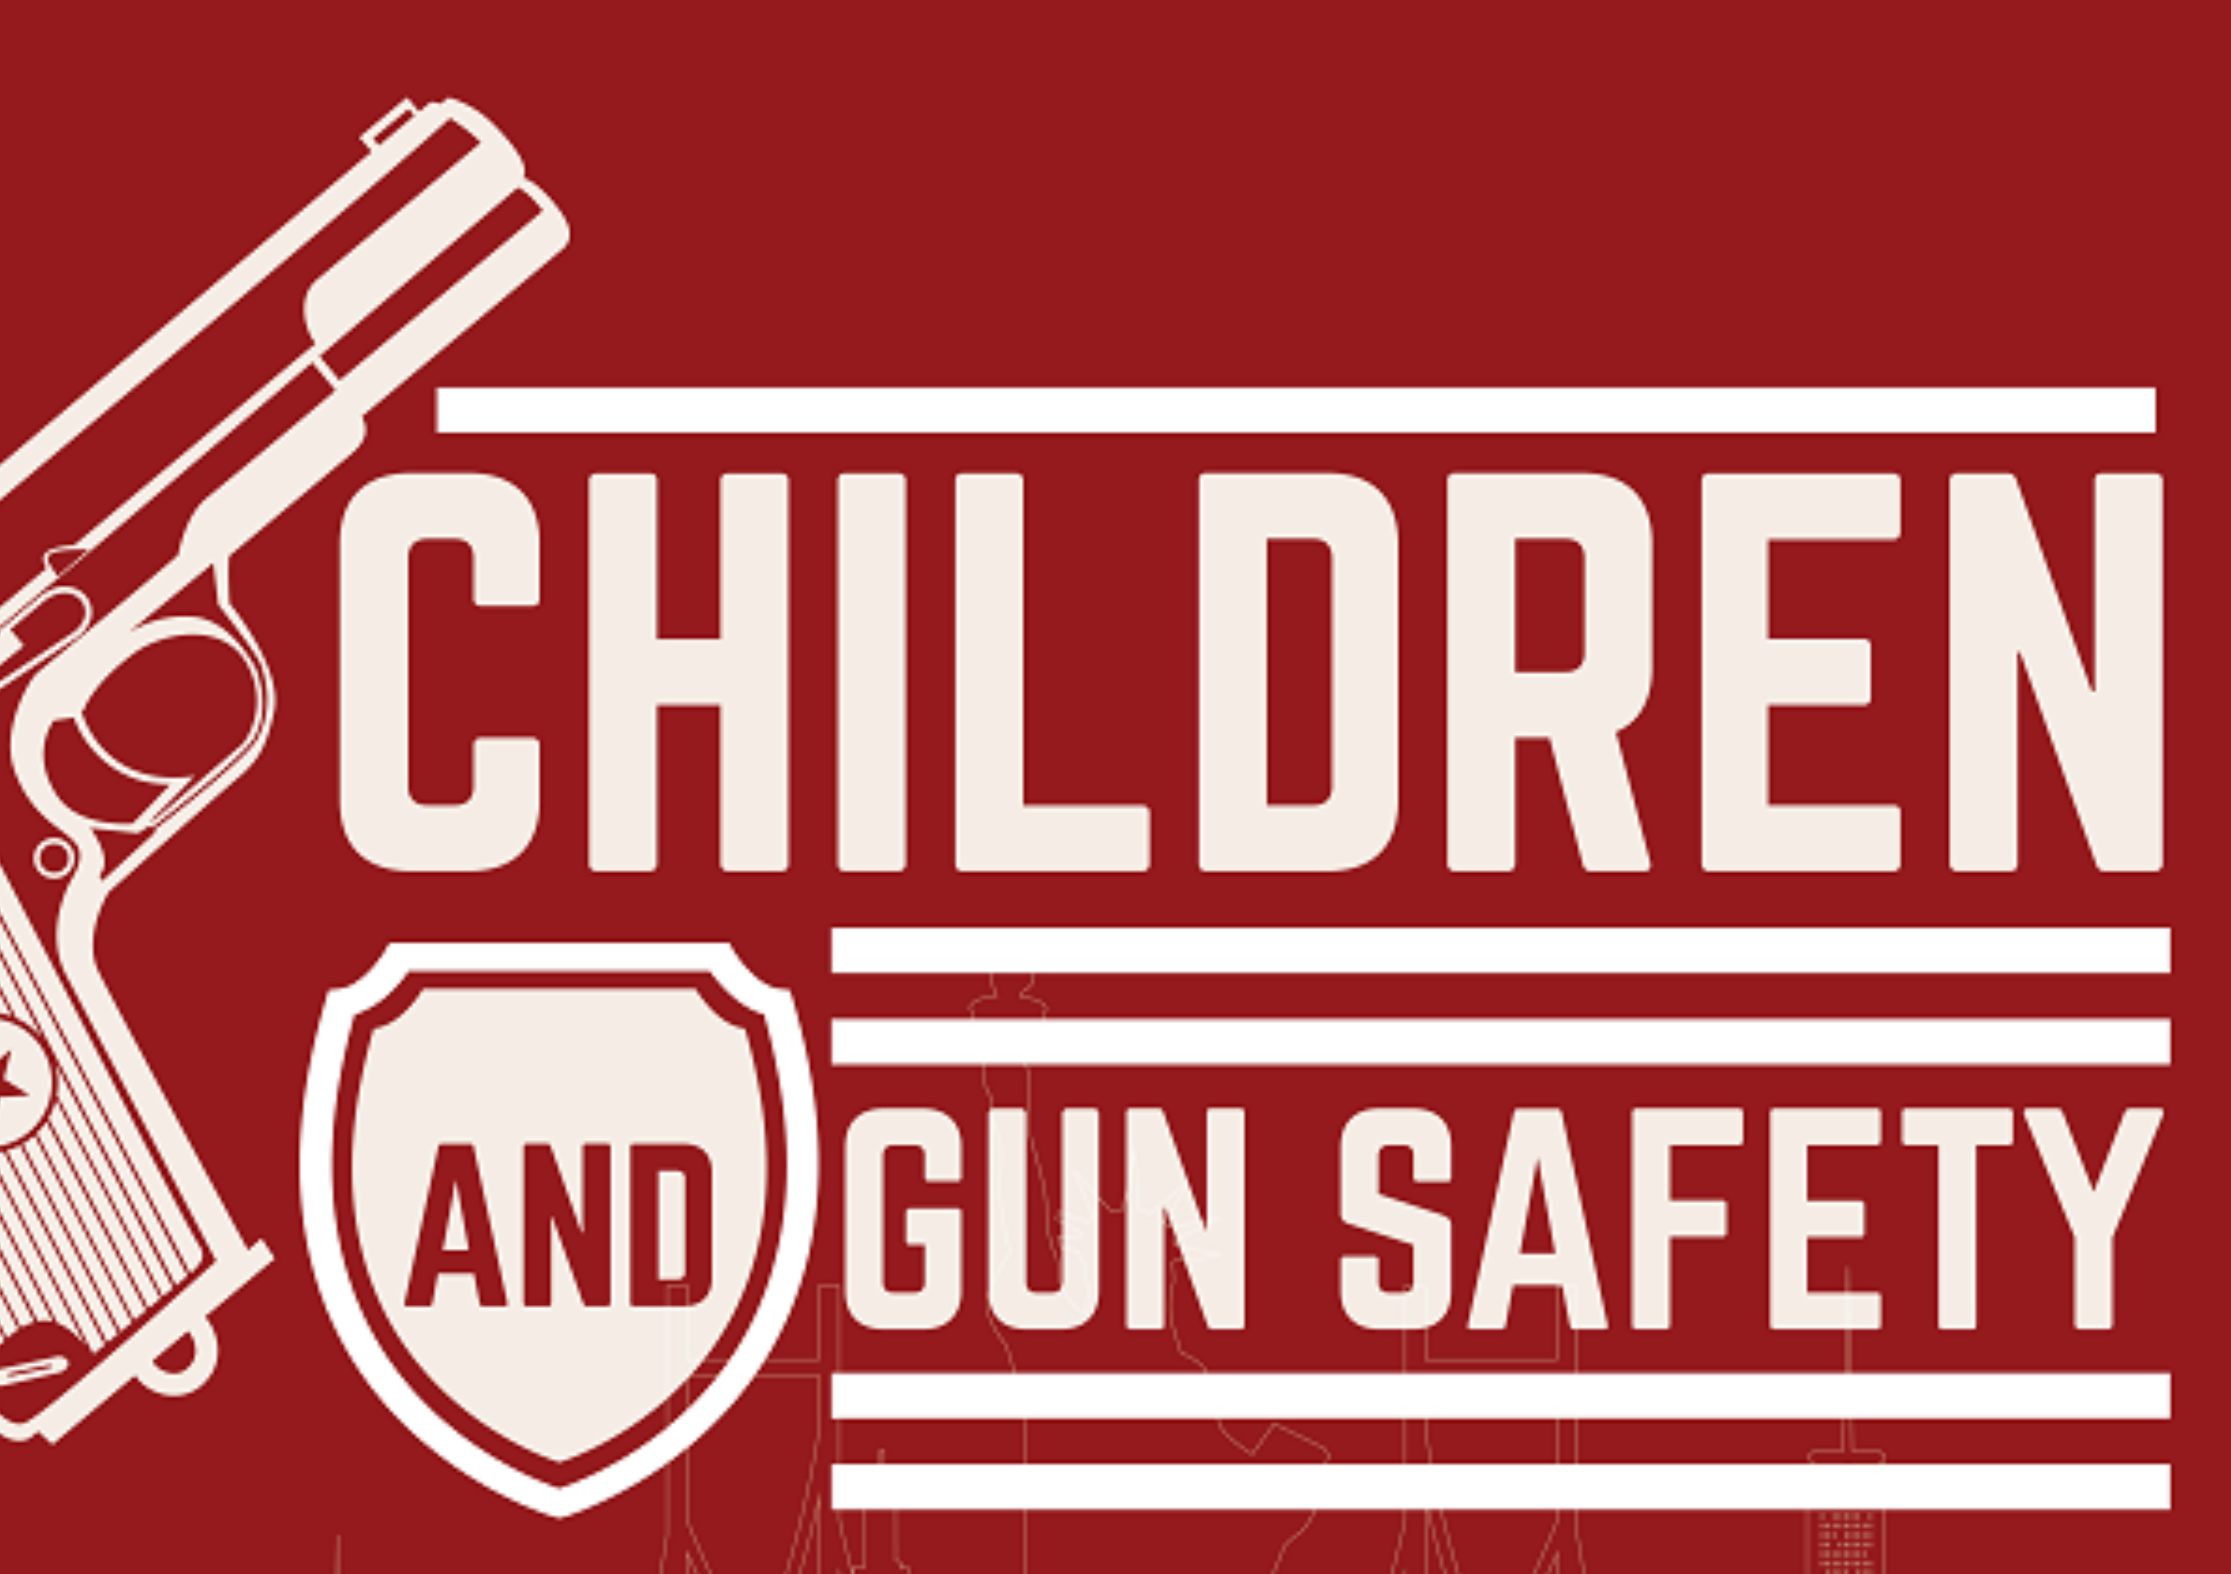 Children and gun safety…